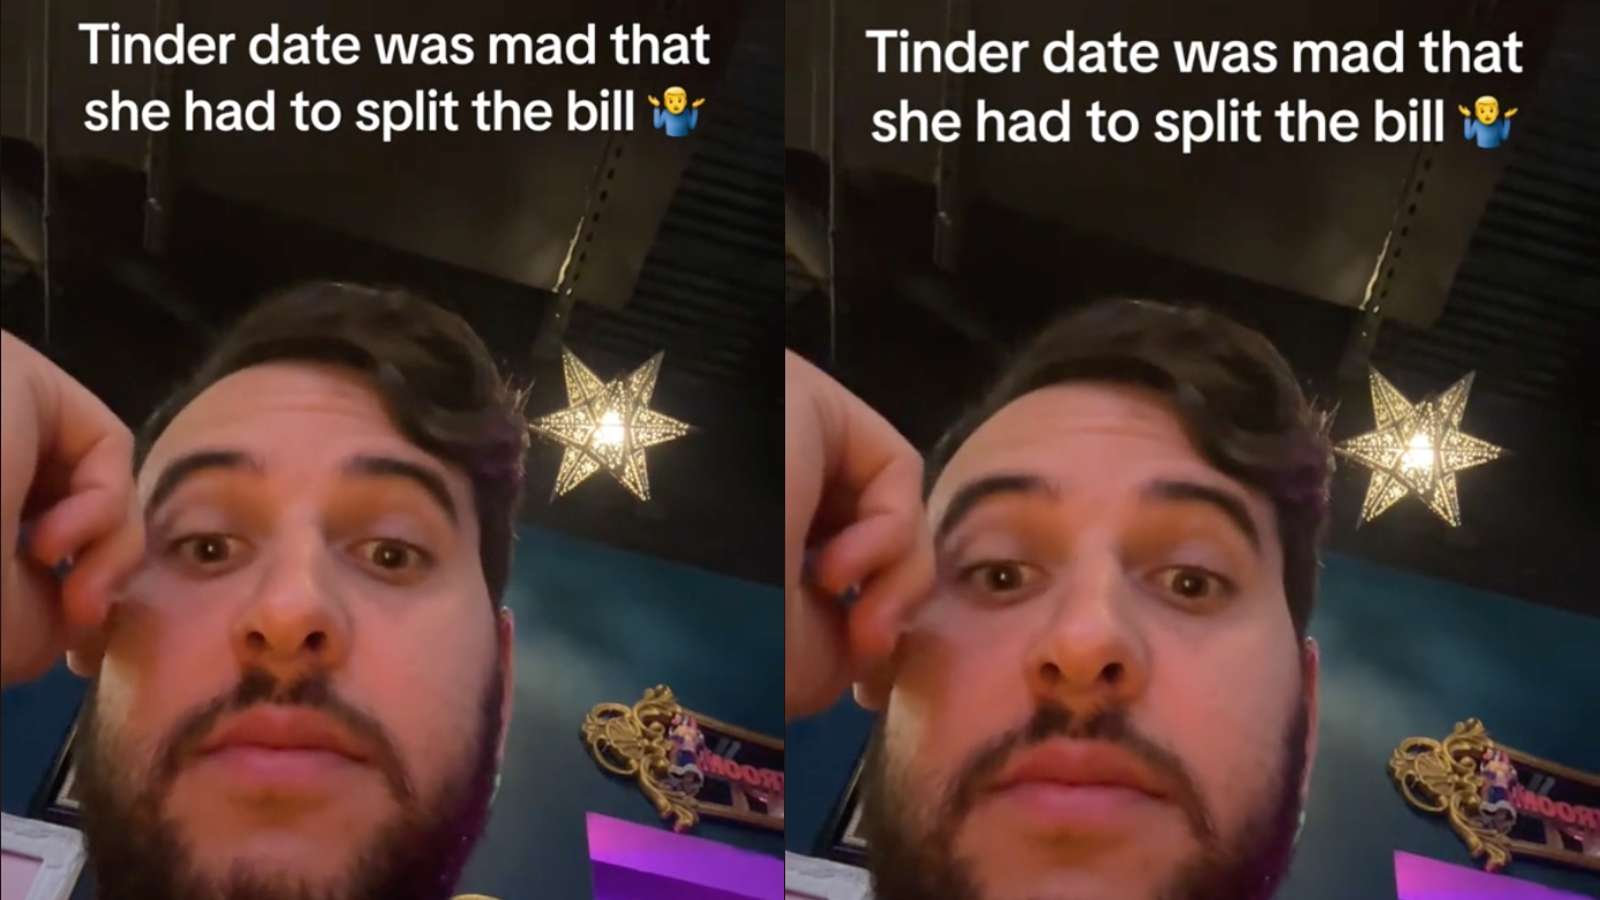 Man says his date won't split bill